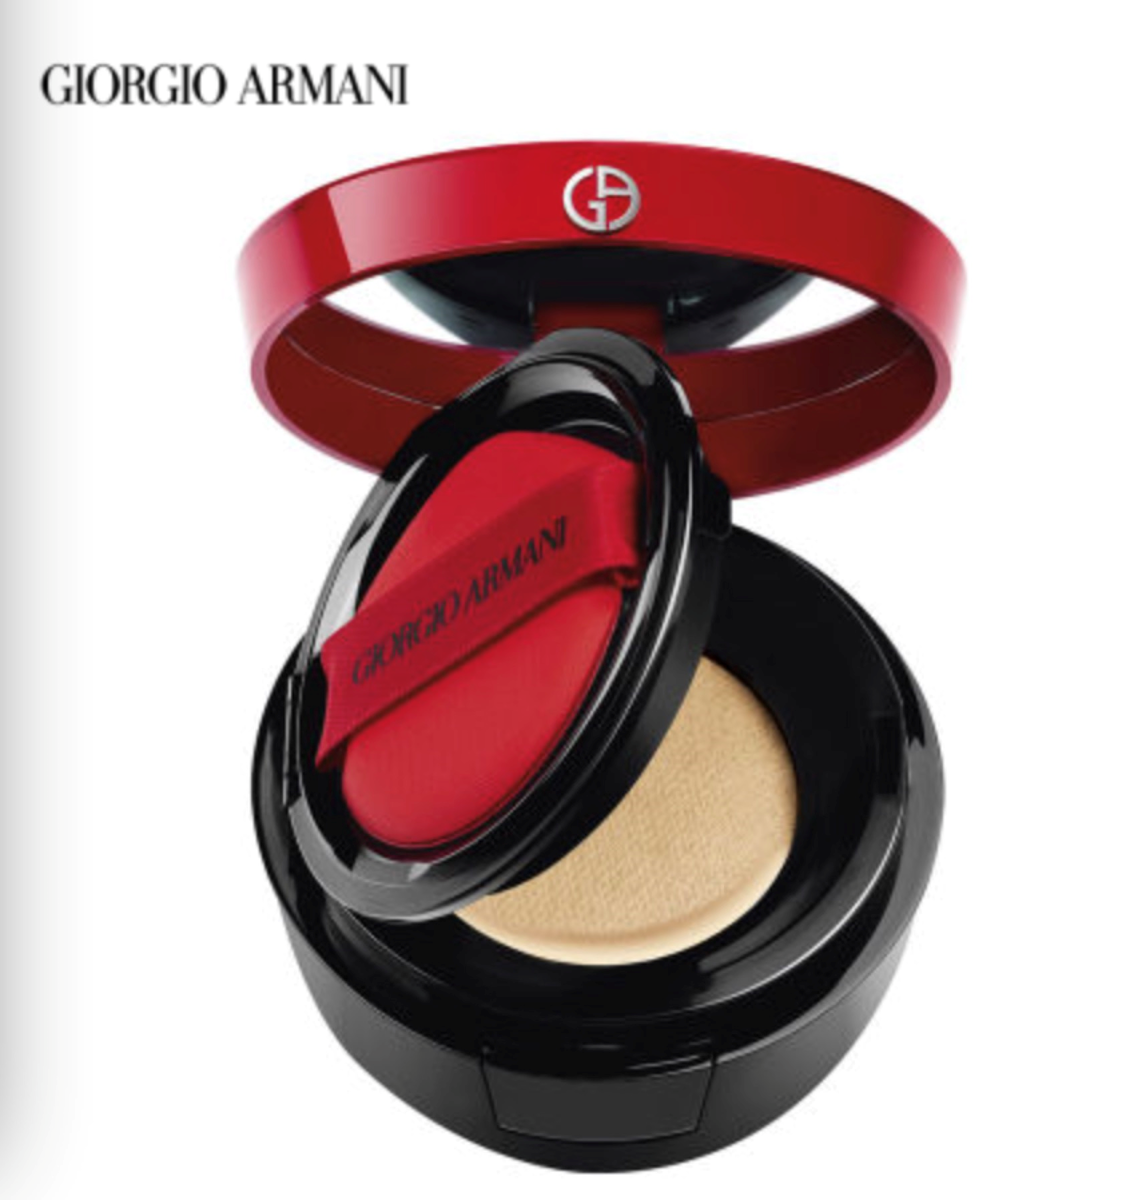 giorgio armani beauty online